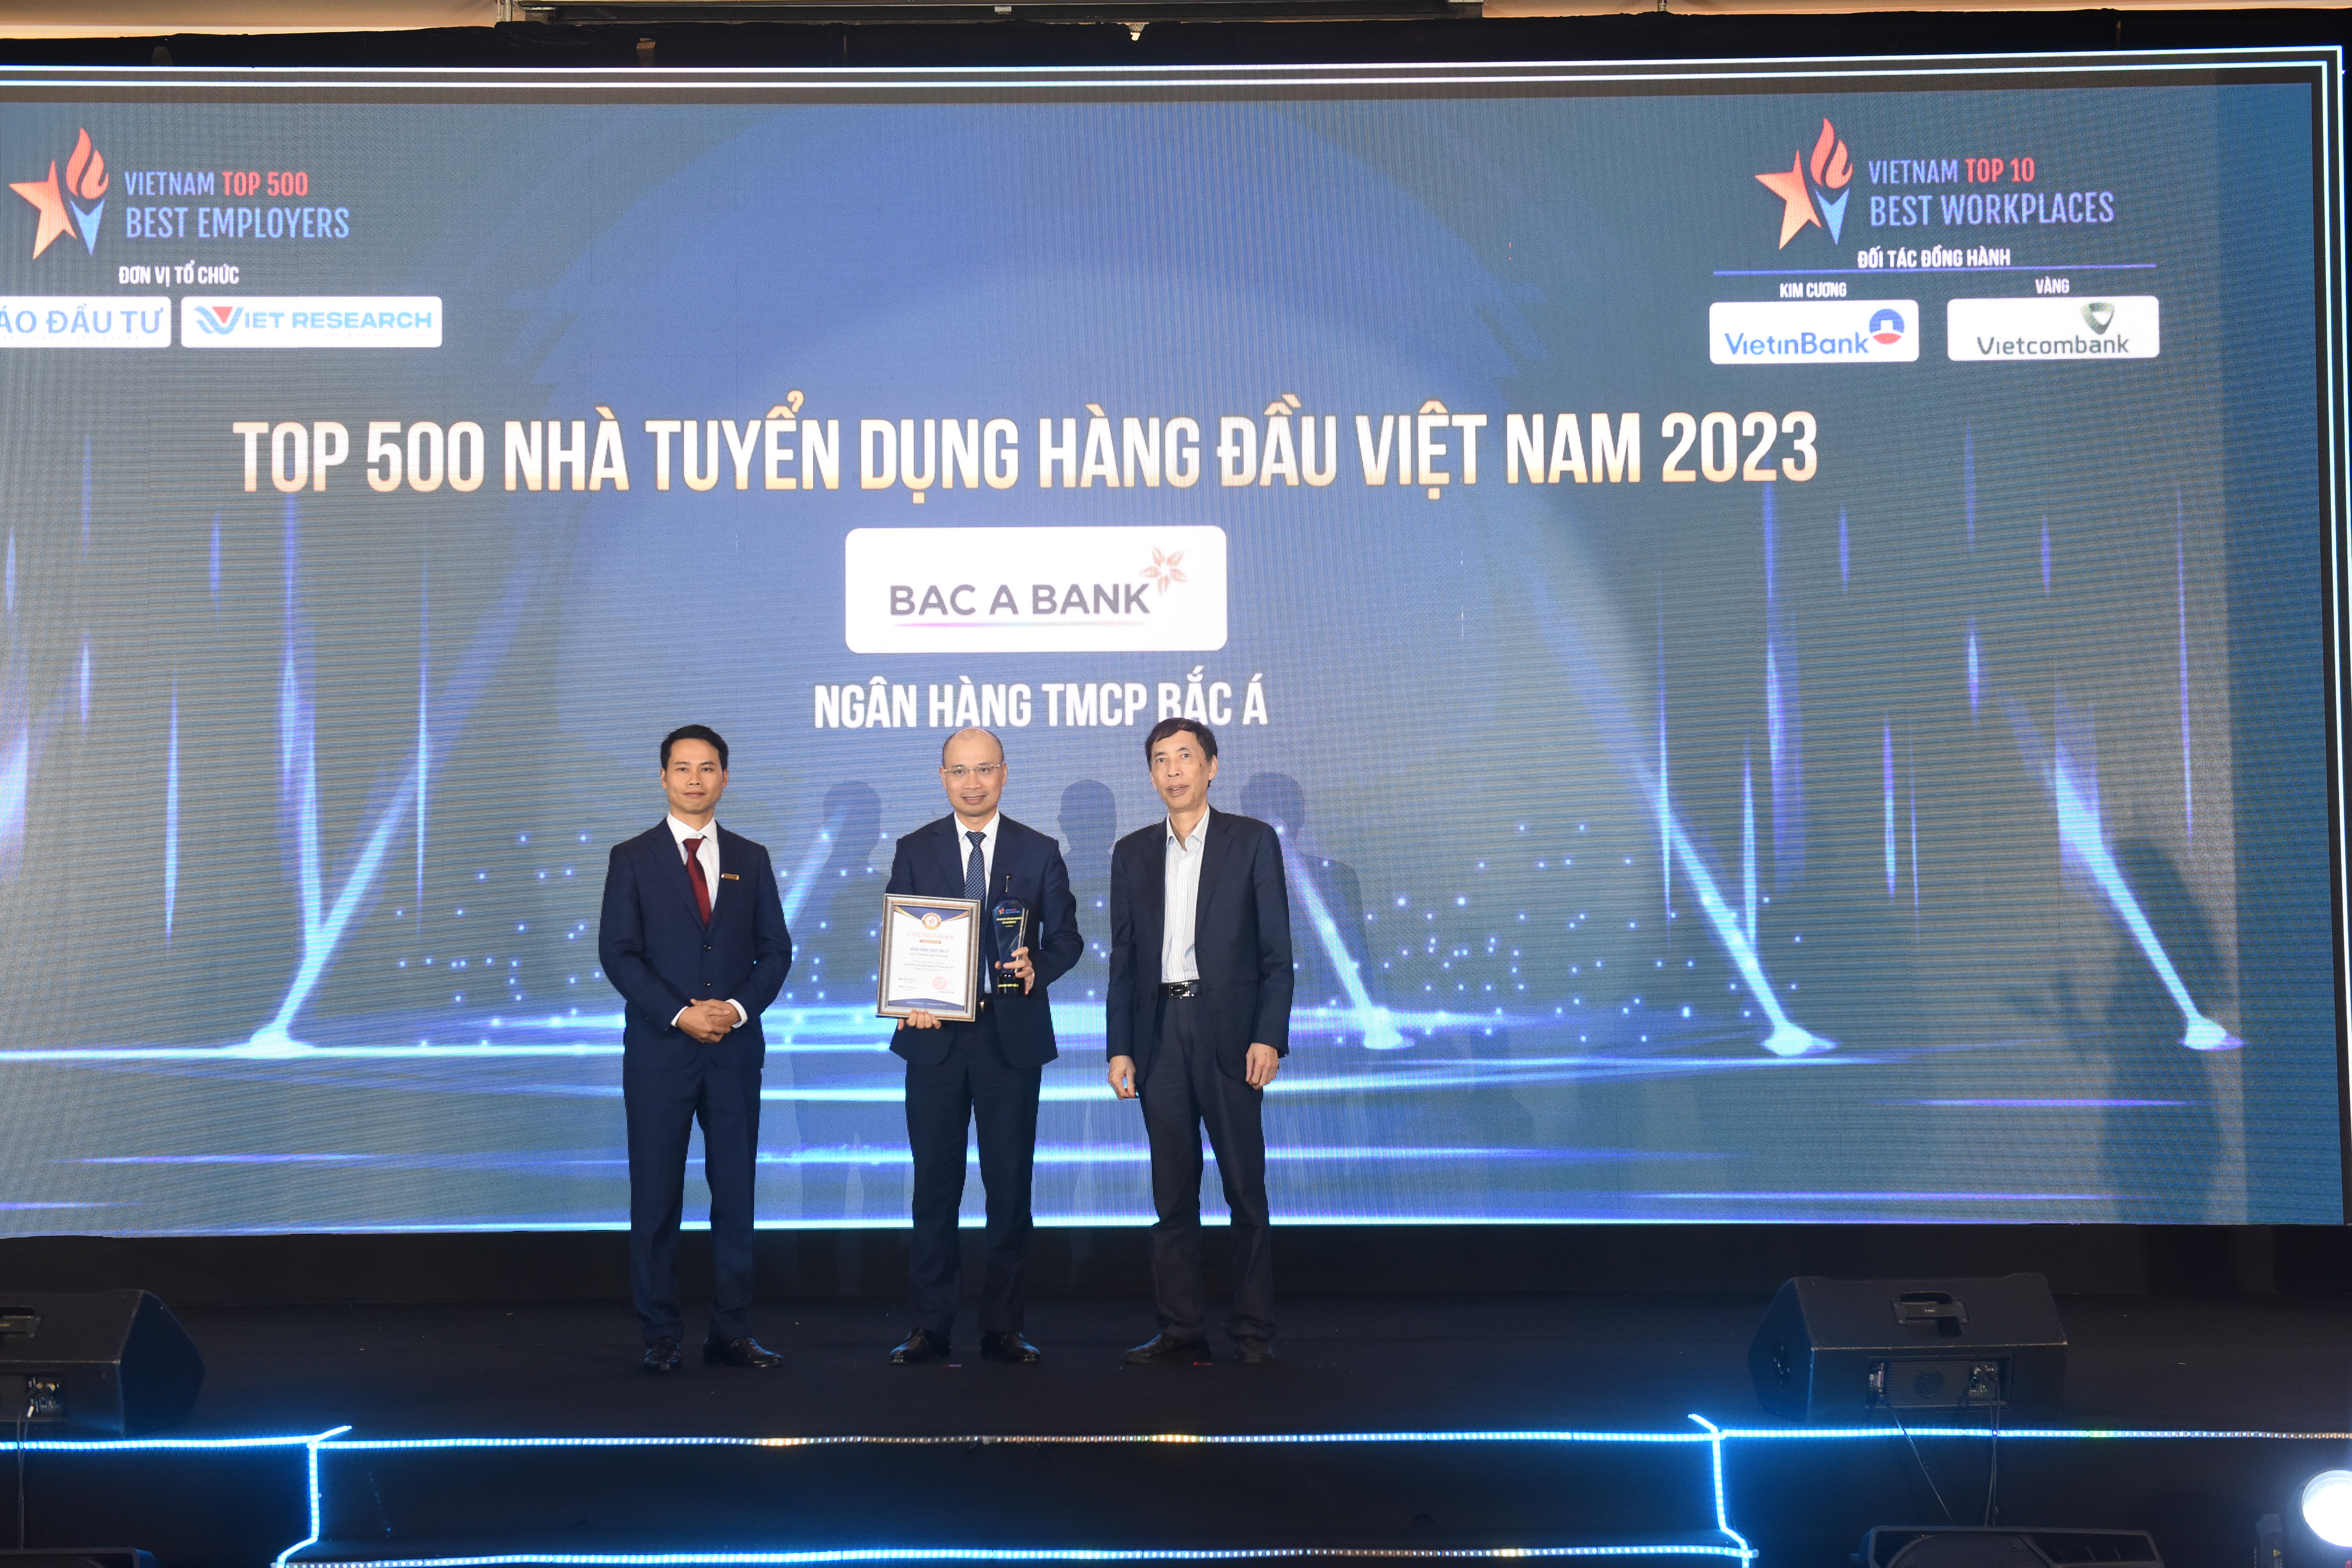 Ngân hàng TMCP Bắc Á được xếp hạng 60 trong danh sách Top 500 nhà tuyển dụng hàng đầu Việt Nam năm 2023. Ảnh: Bac A Bank 